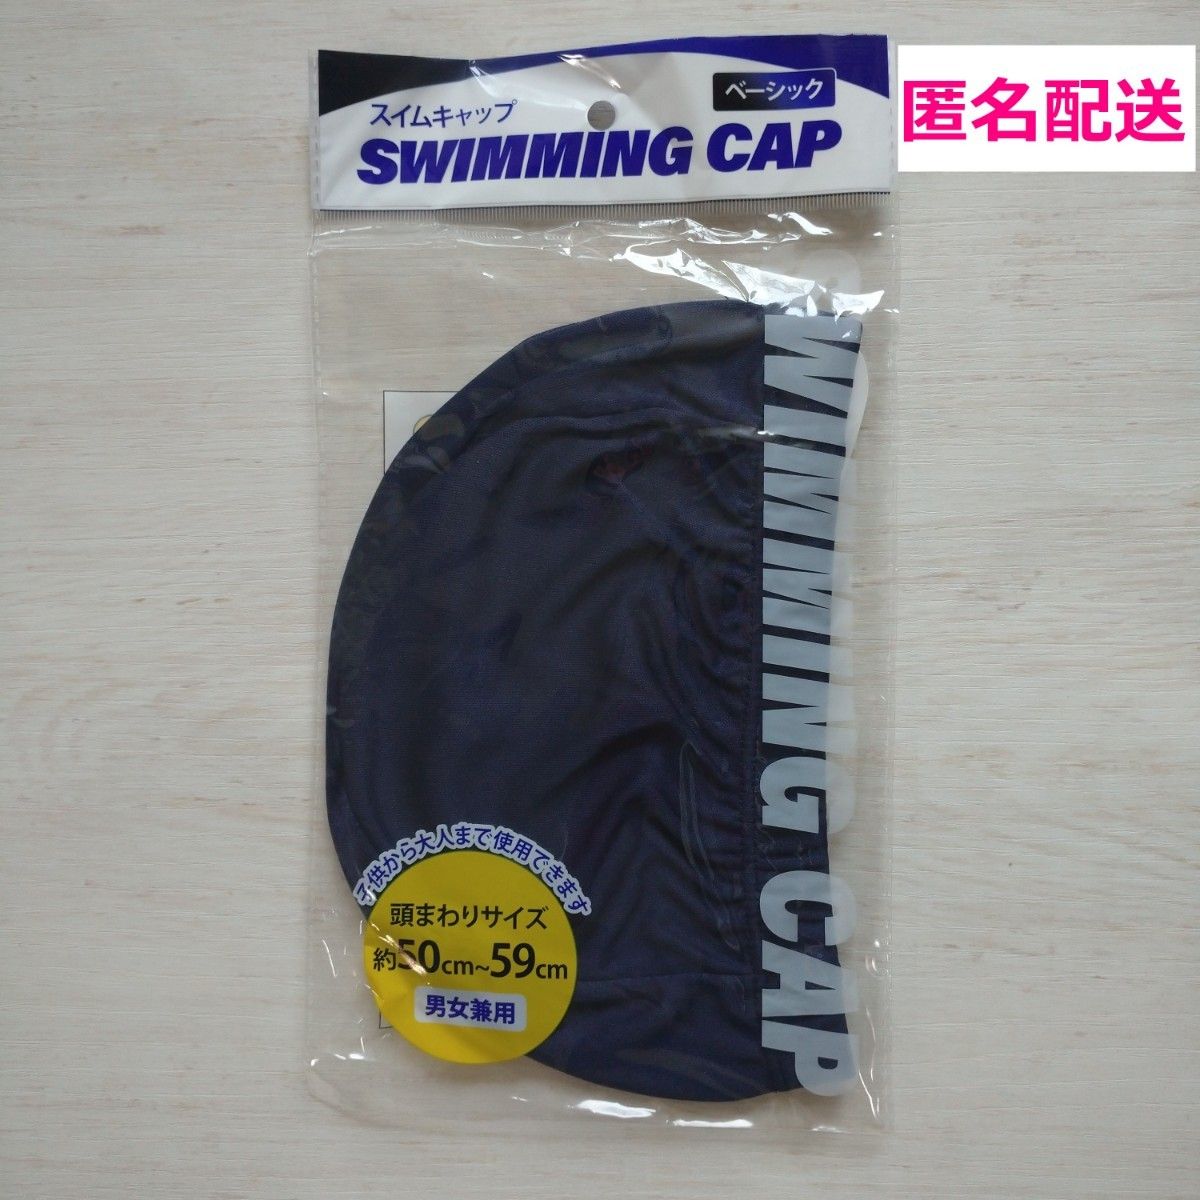 ★新品★スイムキャップ ネイビー 紺 プール 帽子 キャップ スイミング  スイミングキャップ 水泳帽子